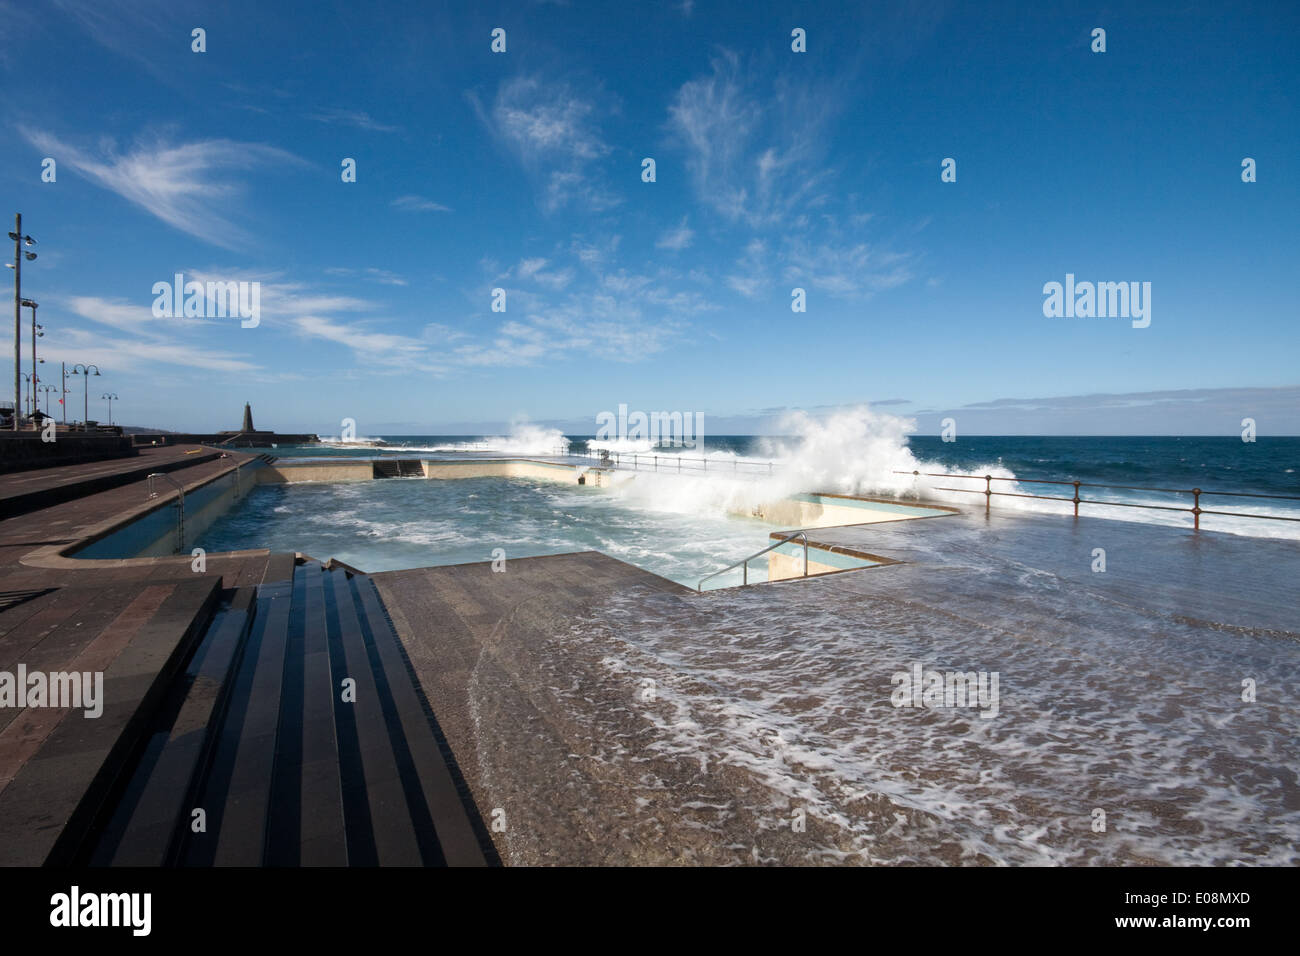 Meerwasserschwimmbecken, Bajamar, Teneriffa, Spanien - Meerwasser-Schwimmbad, Bajamar, Teneriffa, Spanien Stockfoto